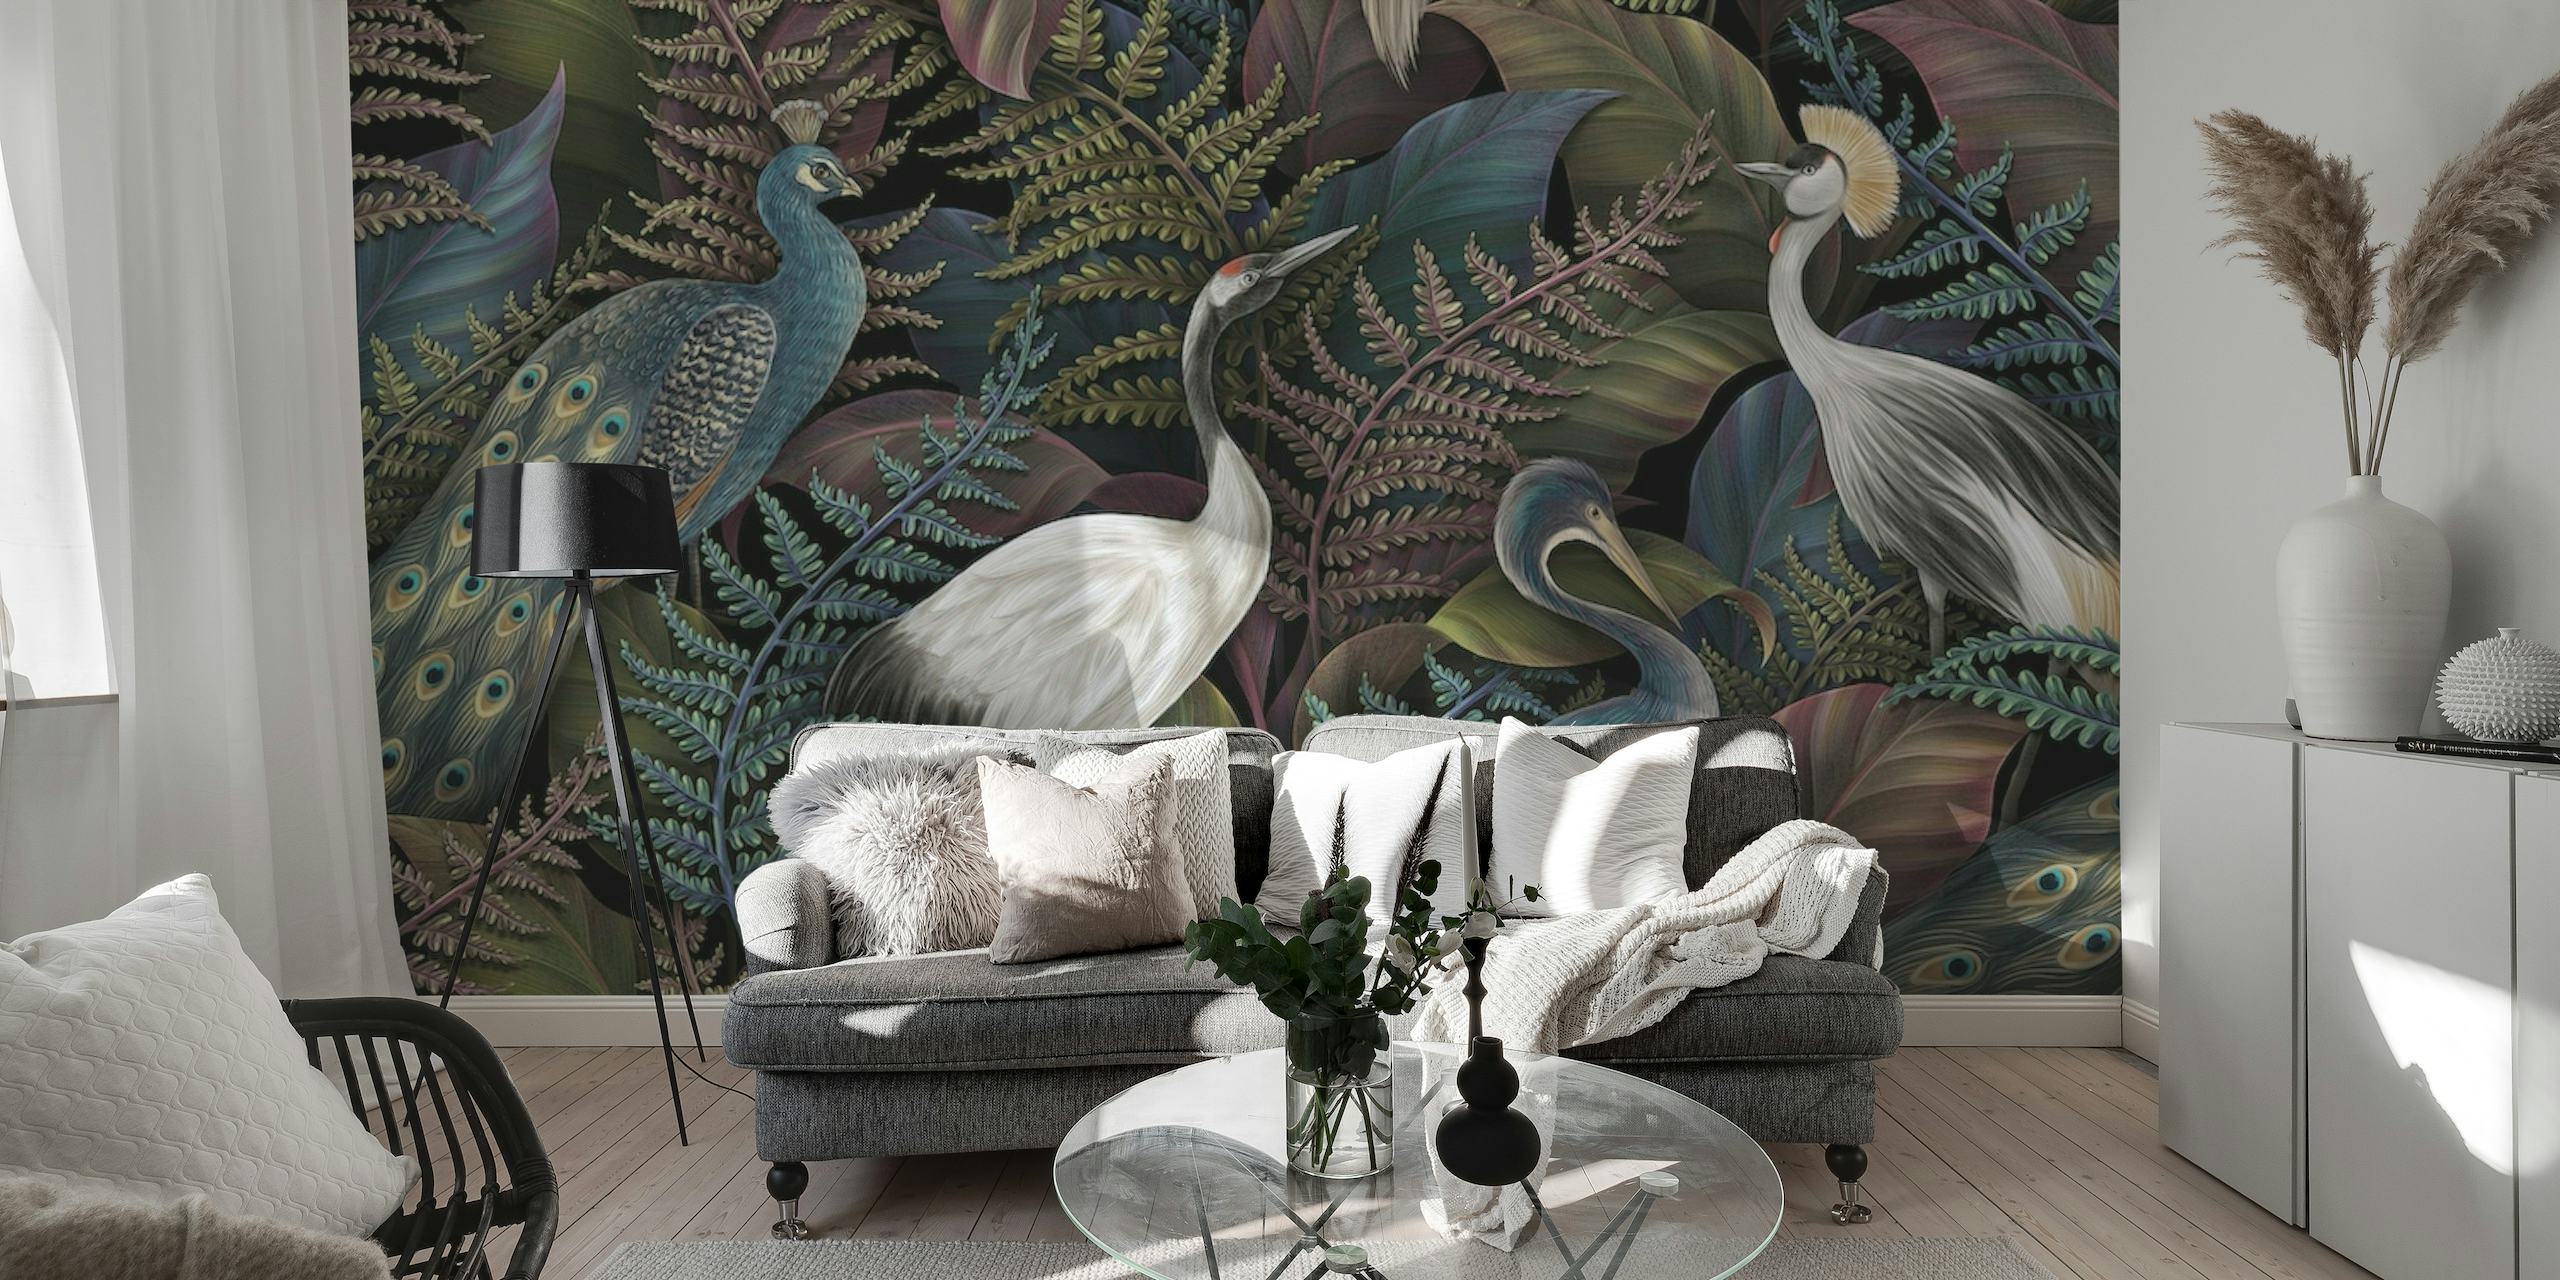 Ein anspruchsvolles Wandbild mit eleganten Vögeln und tropischen Blättern in einer dichten Dschungellandschaft.